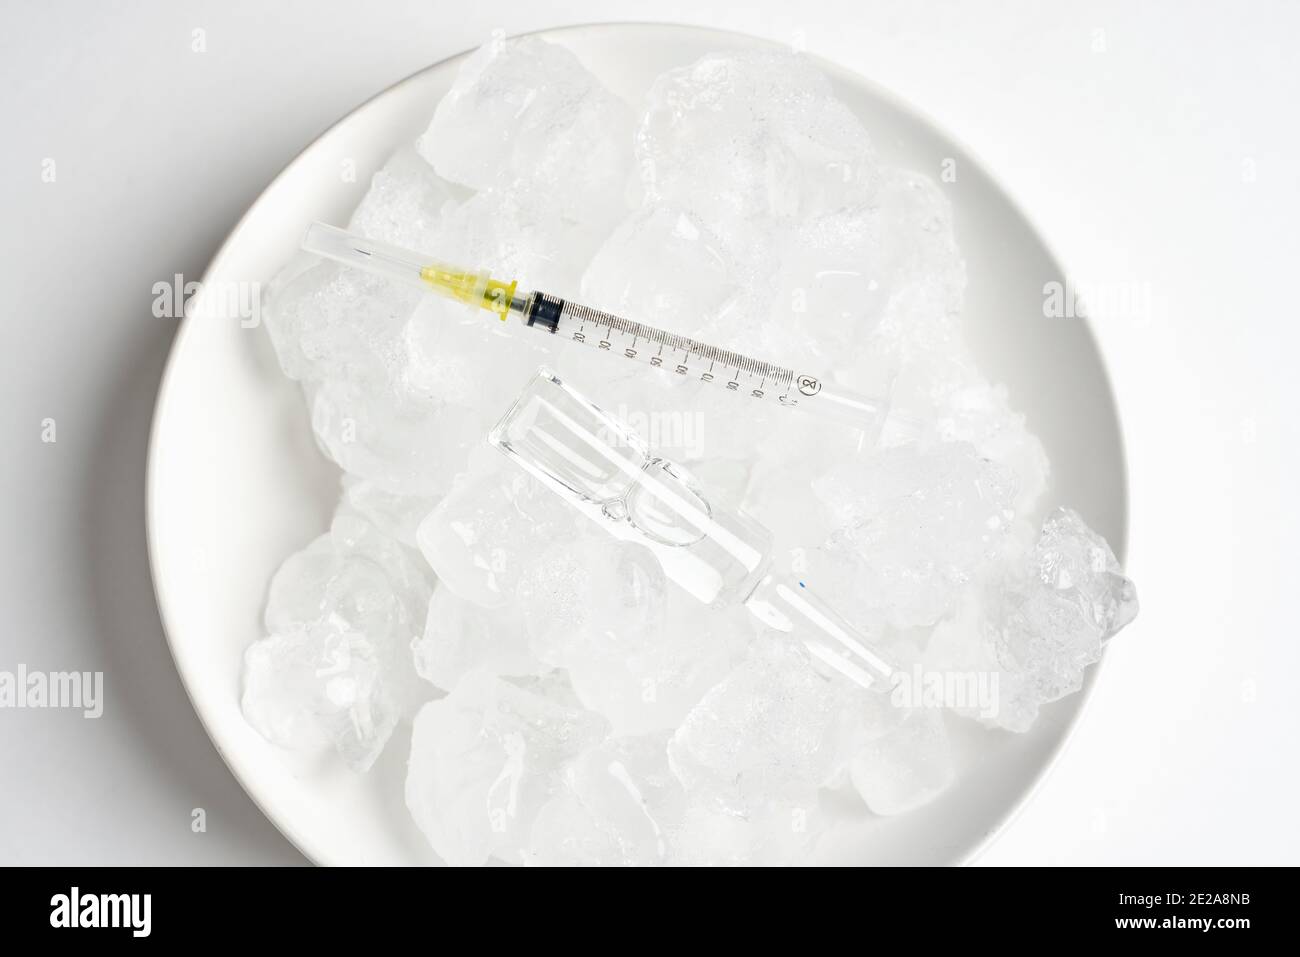 Kühlschrank zur Lagerung von Impfstoffen. Fläschchen auf dem Eis. Langfristige Lagerung des Covid-19-Impfstoffs. Coronavirus-Impffläschchen werden in extremer Kühllagerung aufbewahrt Stockfoto